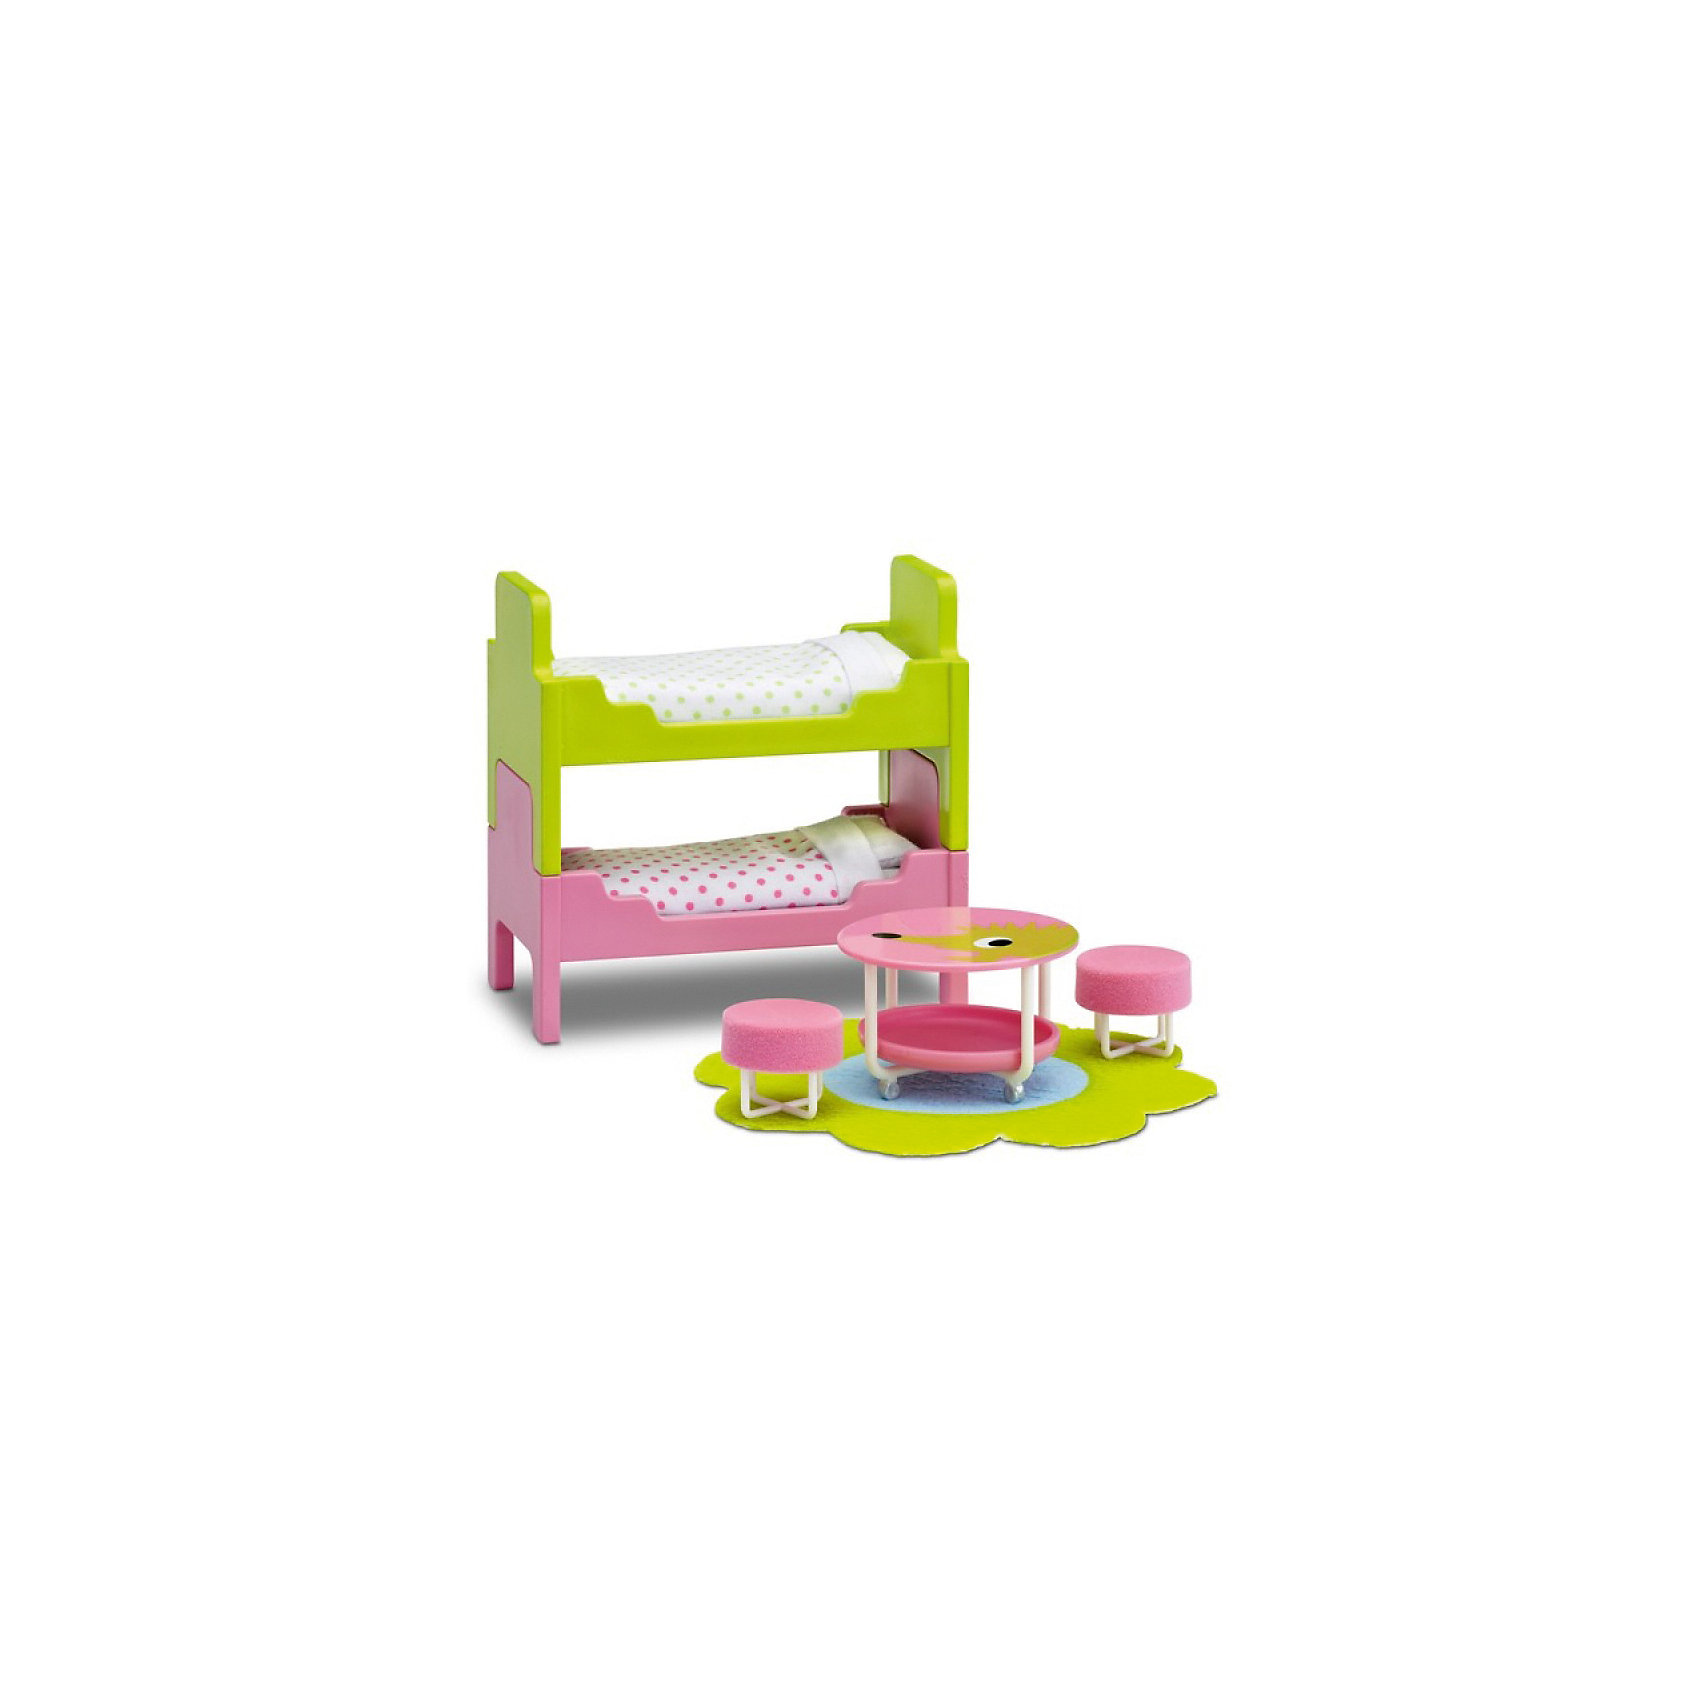 Мебель для домика Смоланд "Детская с 2 кроватями" Lundby 13406719